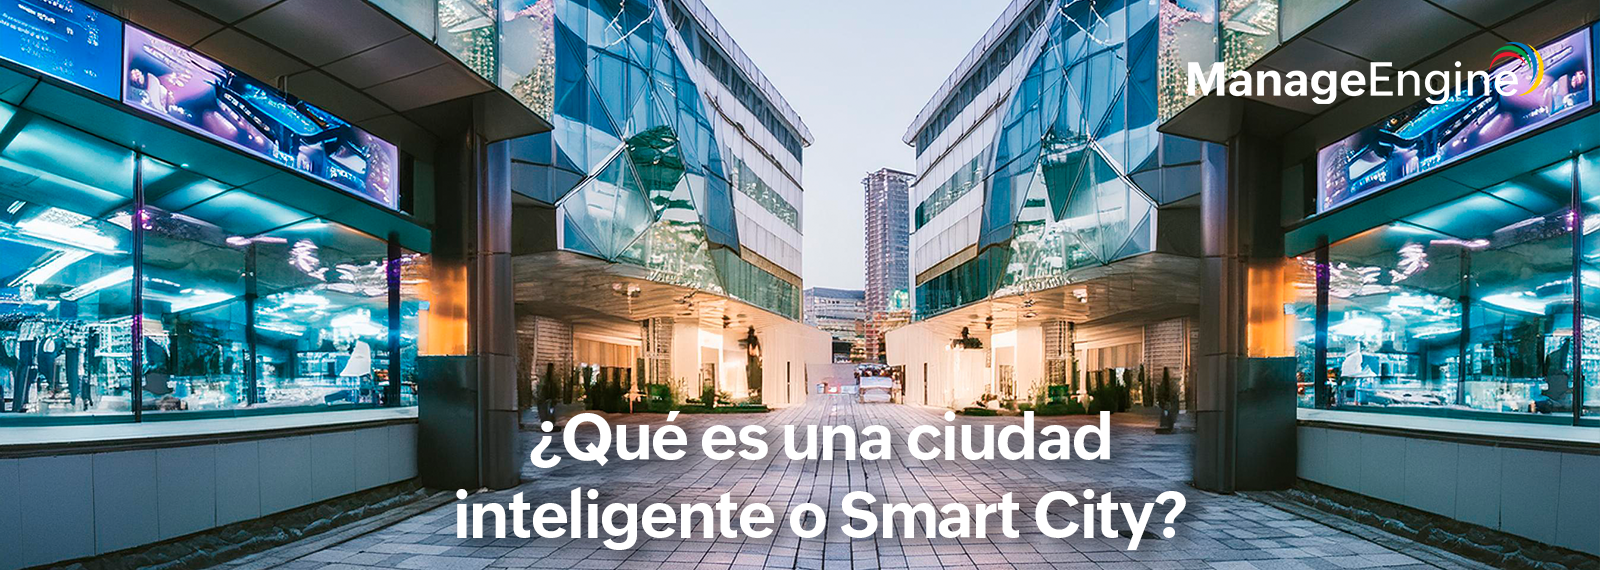 ¿Qué es una ciudad inteligente o Smart City? ¿Existen en Latinoamérica?